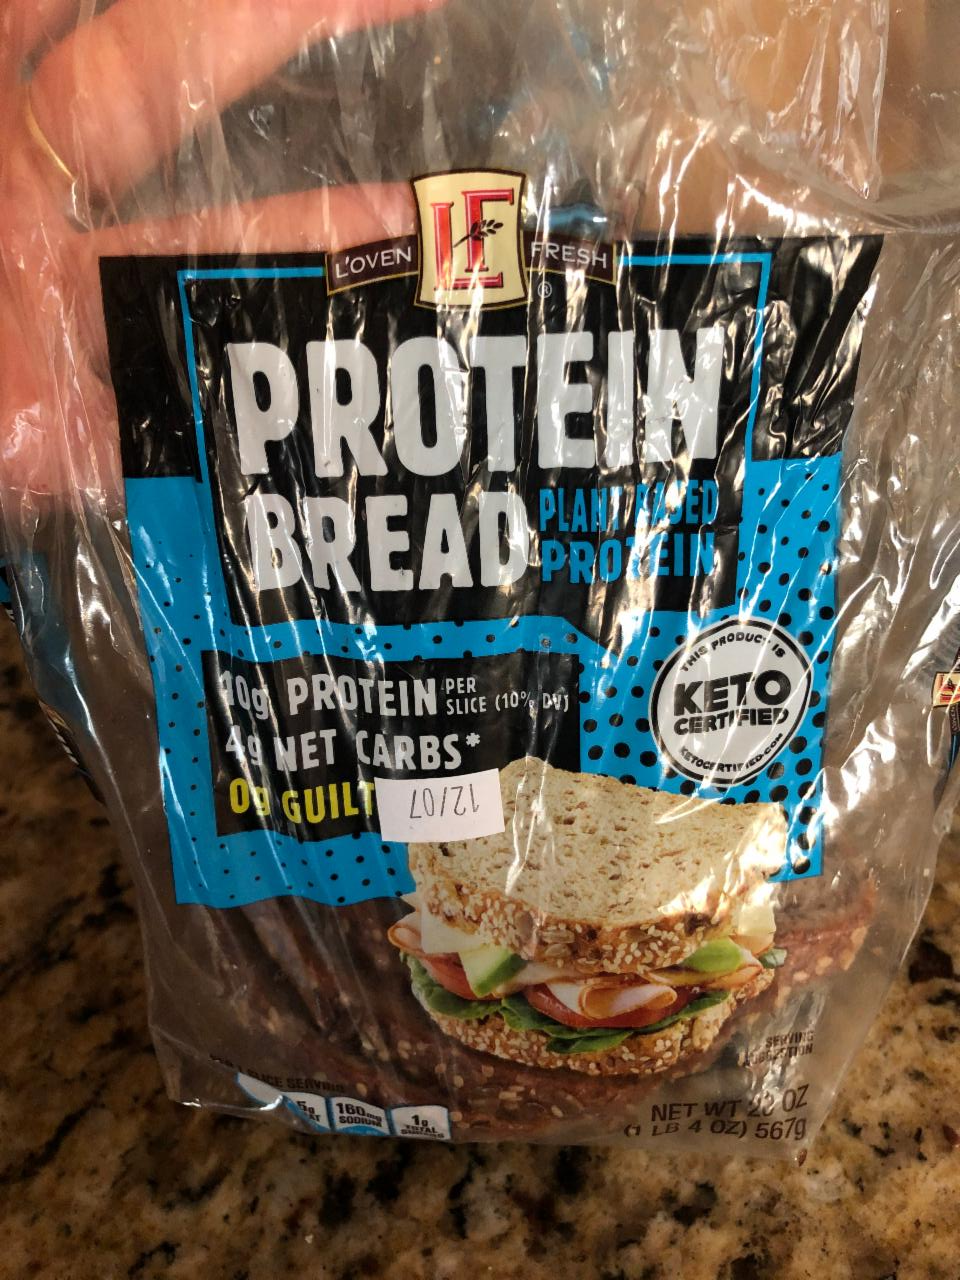 Фото - Хліб протеїновий Protein Bread Loven Fresh